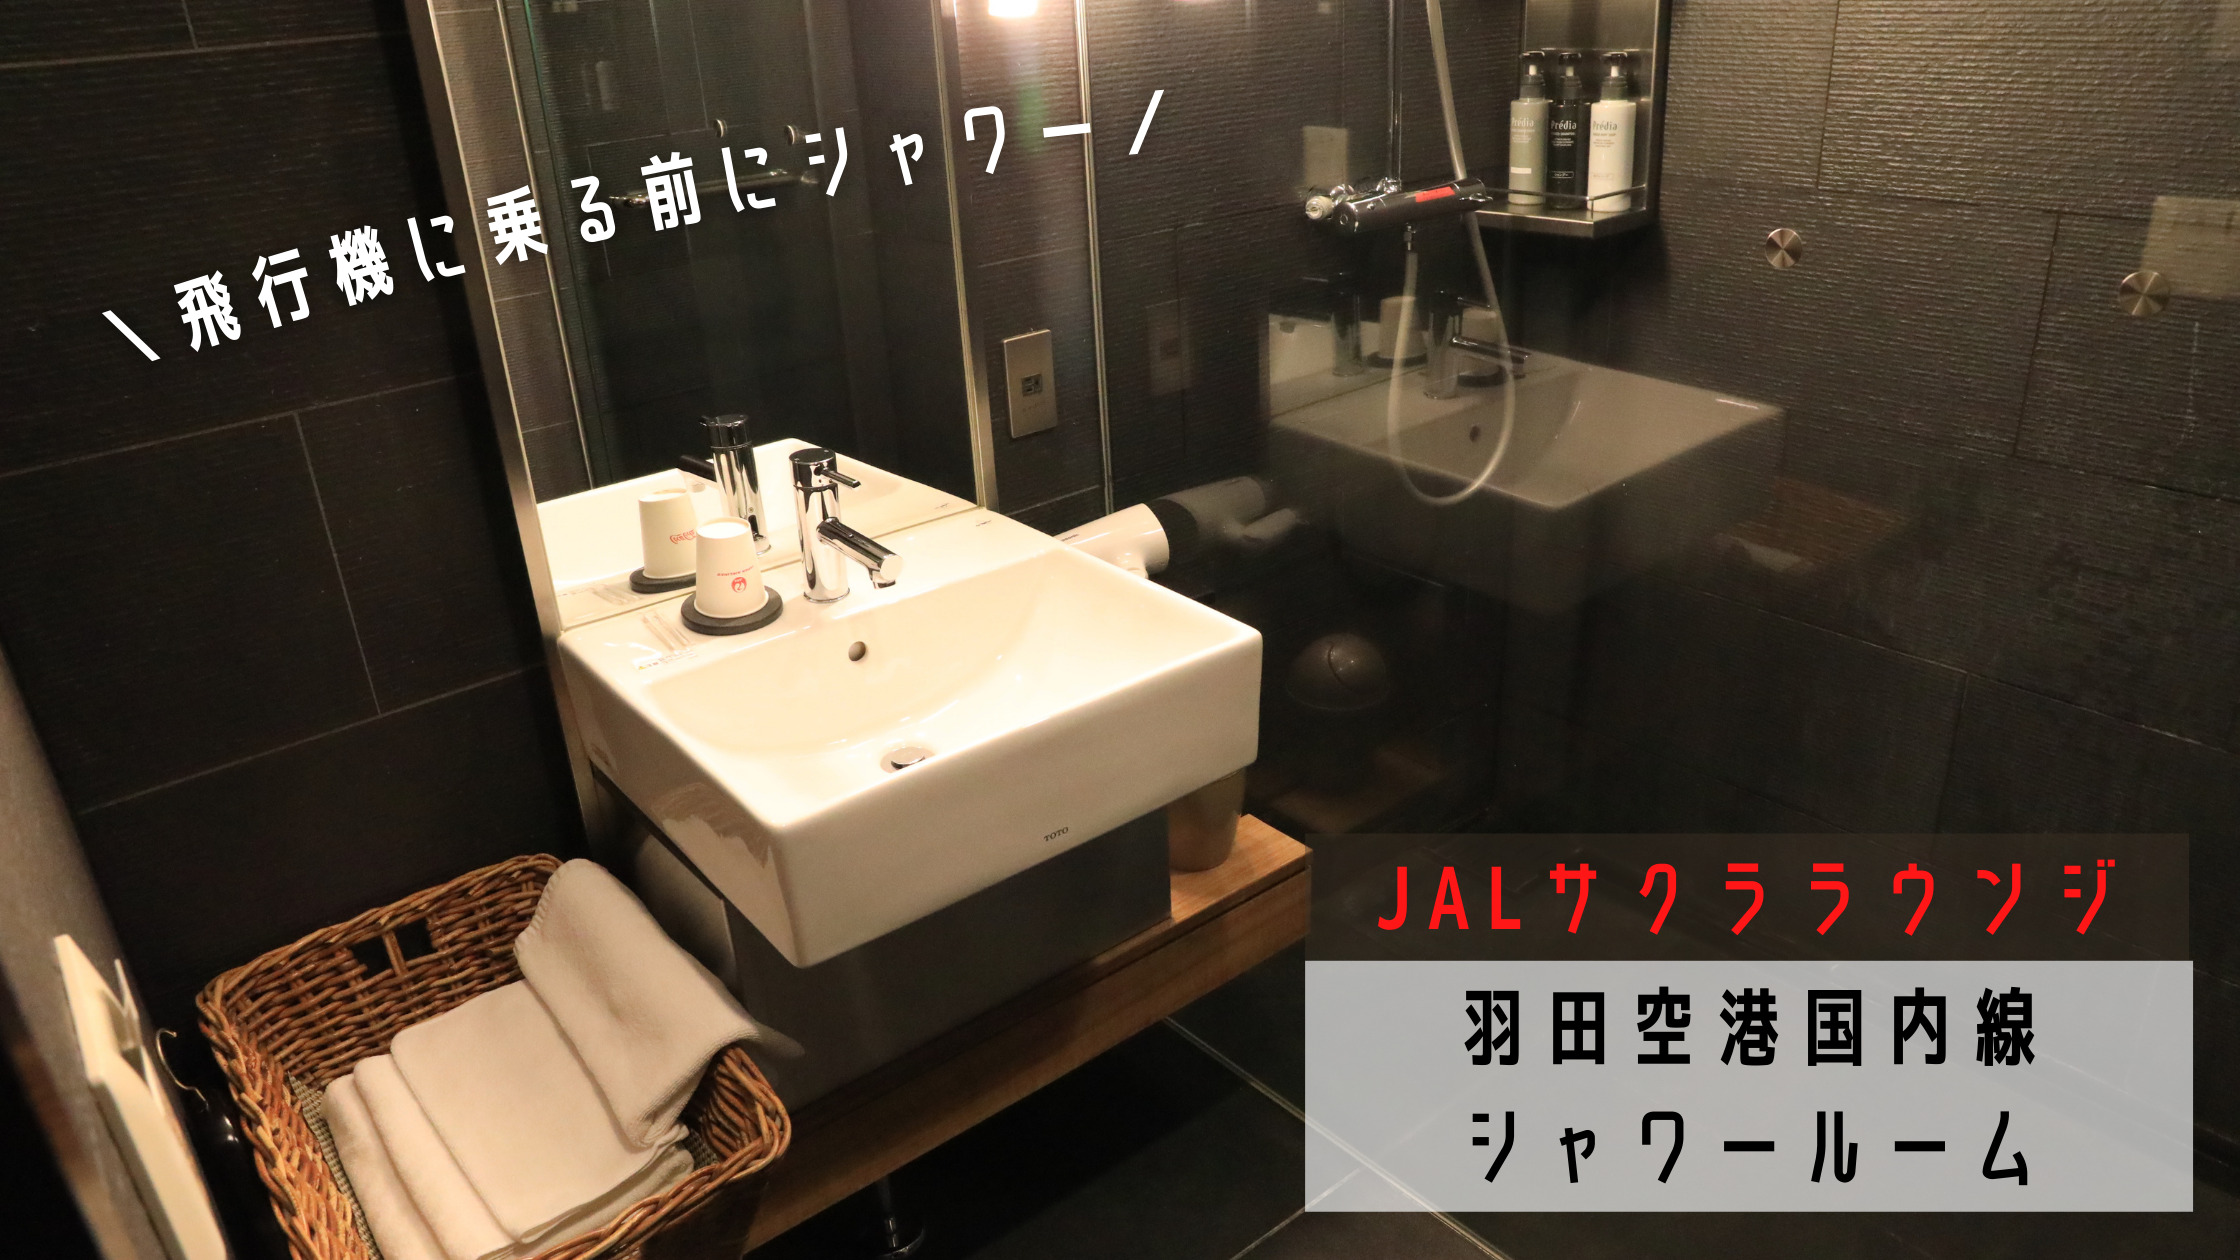 飛行機に乗る前にサッパリ 羽田空港jalサクララウンジのシャワールームはホテルみたいだった シテイリョウコウ